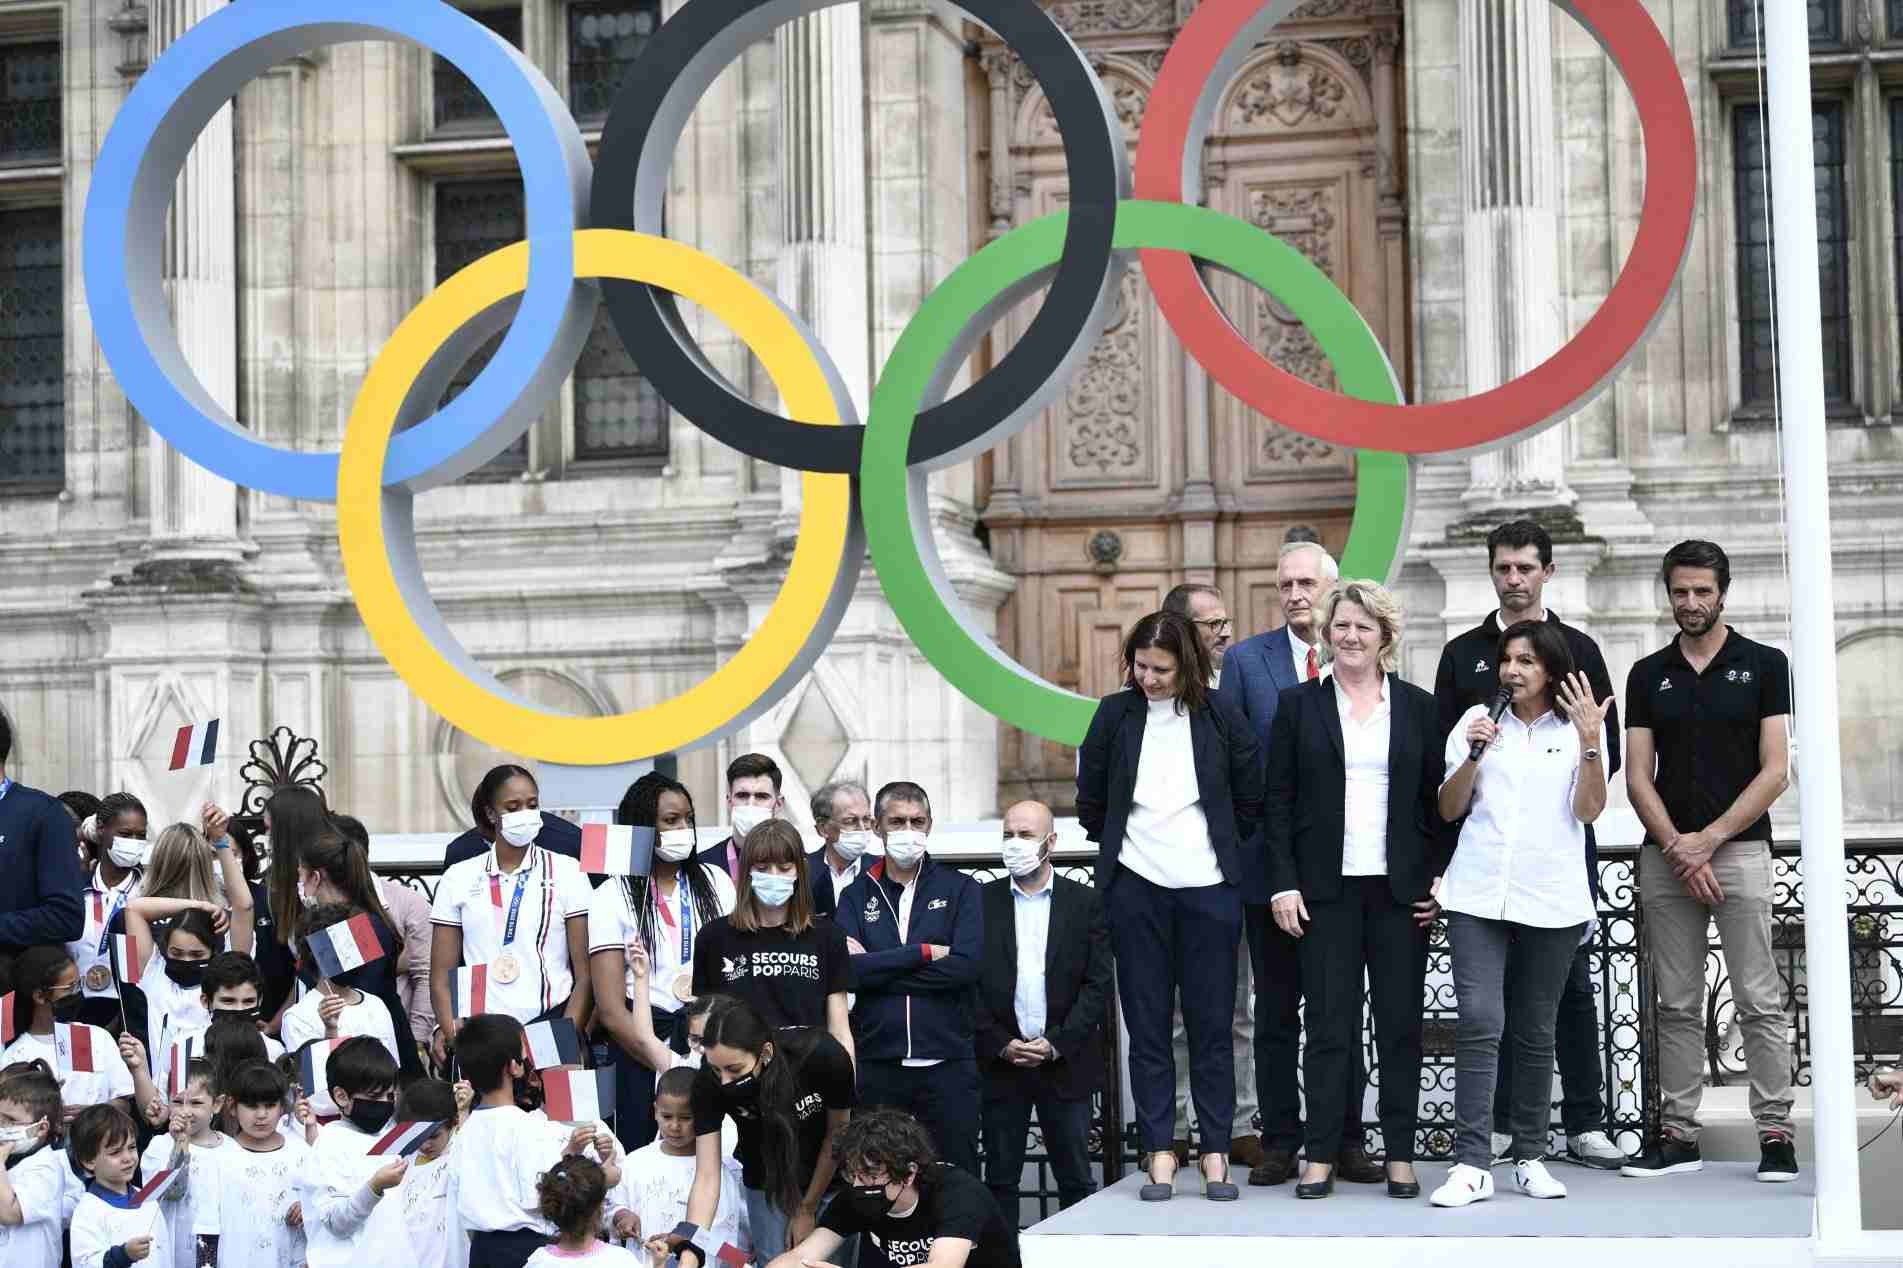 Próxima Olimpíada será em Paris, em 2024; organização prevê Jogos mais sustentáveis da história